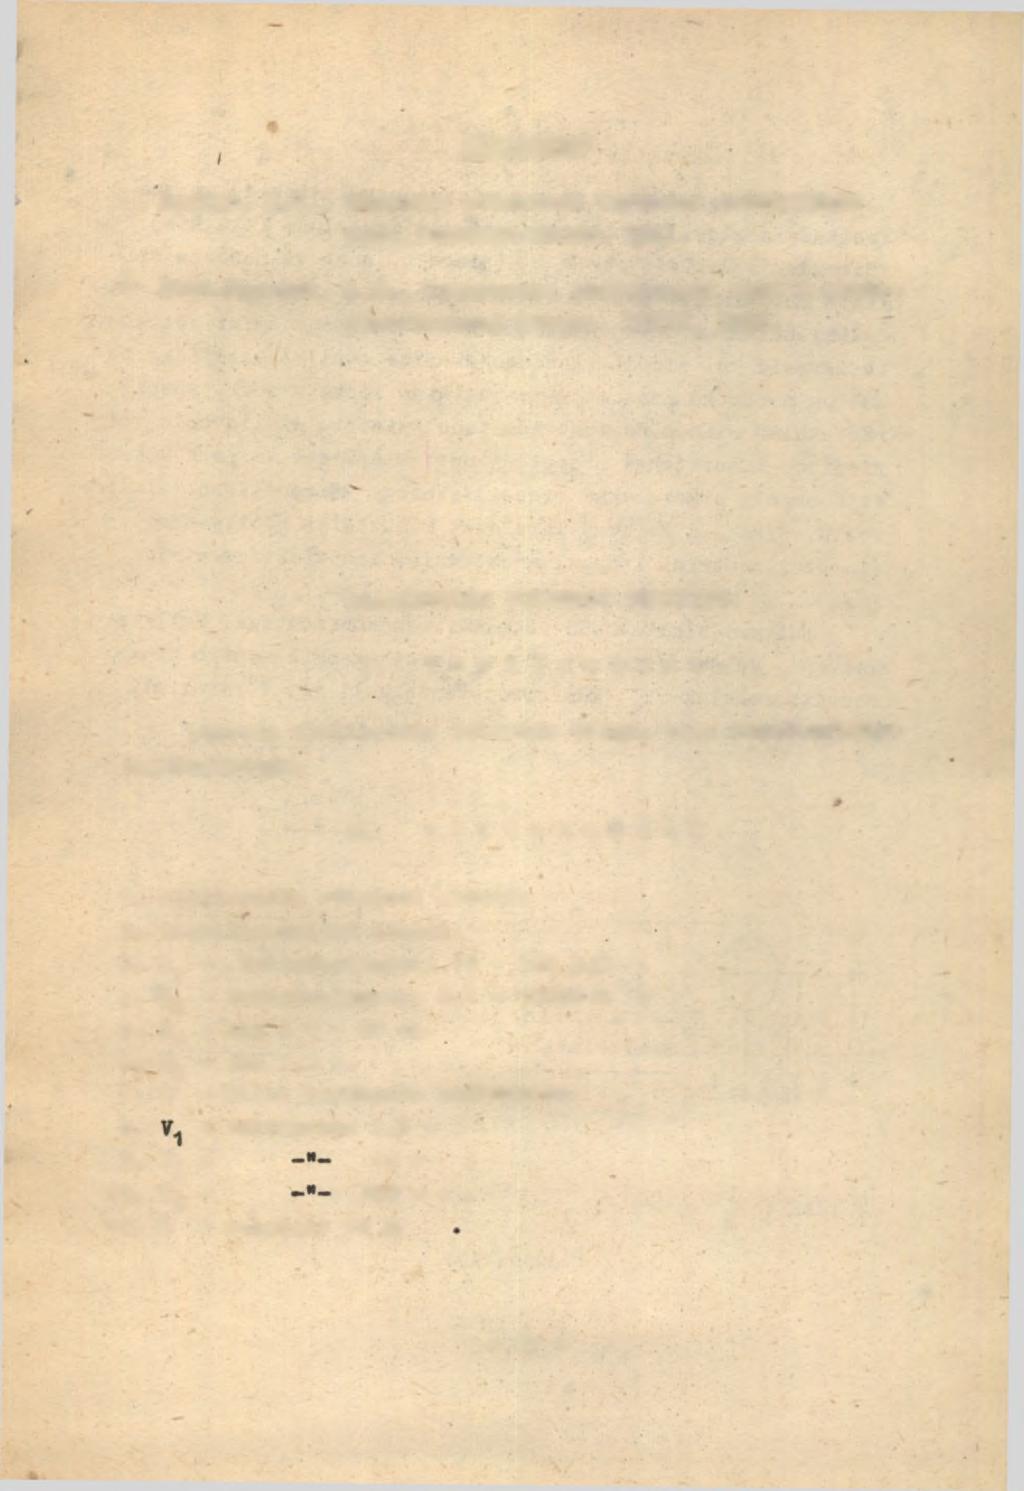 Kir.1andus: 1. Брейдо, И.Я., Ламповые усилители сигналов постоянного тока.госэнергоивдат, 1961.